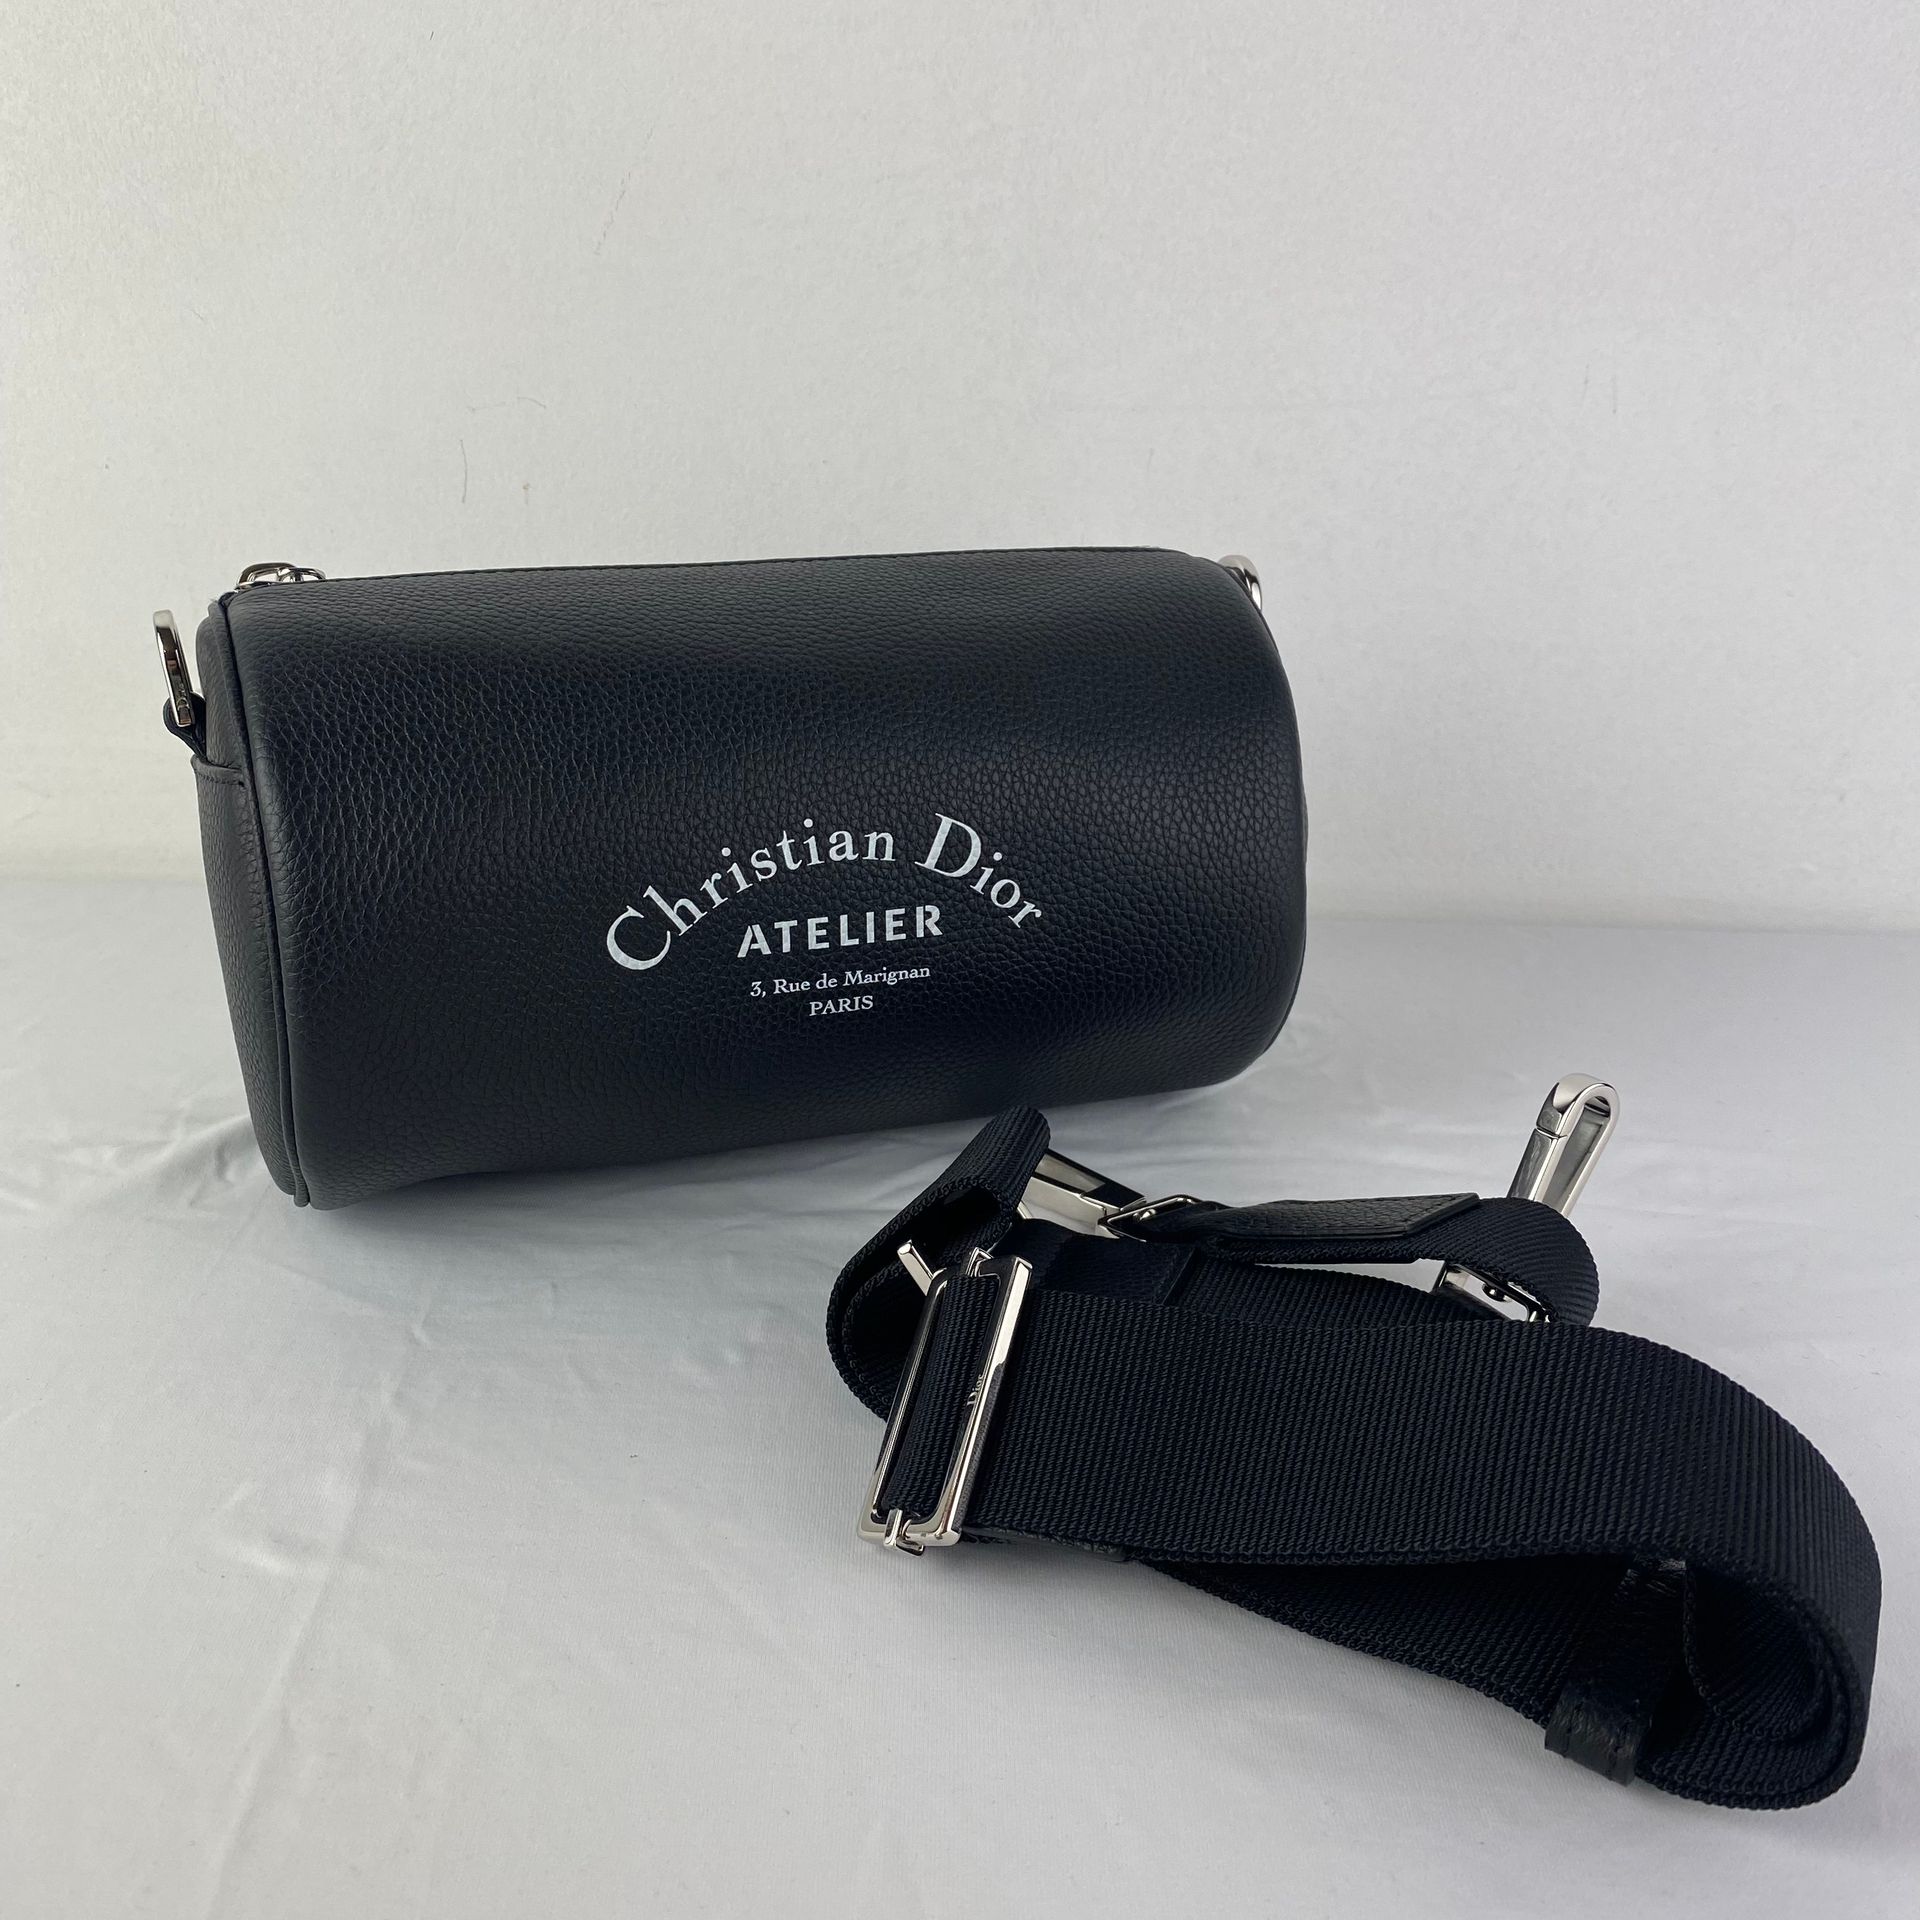 DIOR 一款DIOR的手包，型号为Atelier Roller Bag，黑色皮革，带肩带，尺寸为21cm N°。